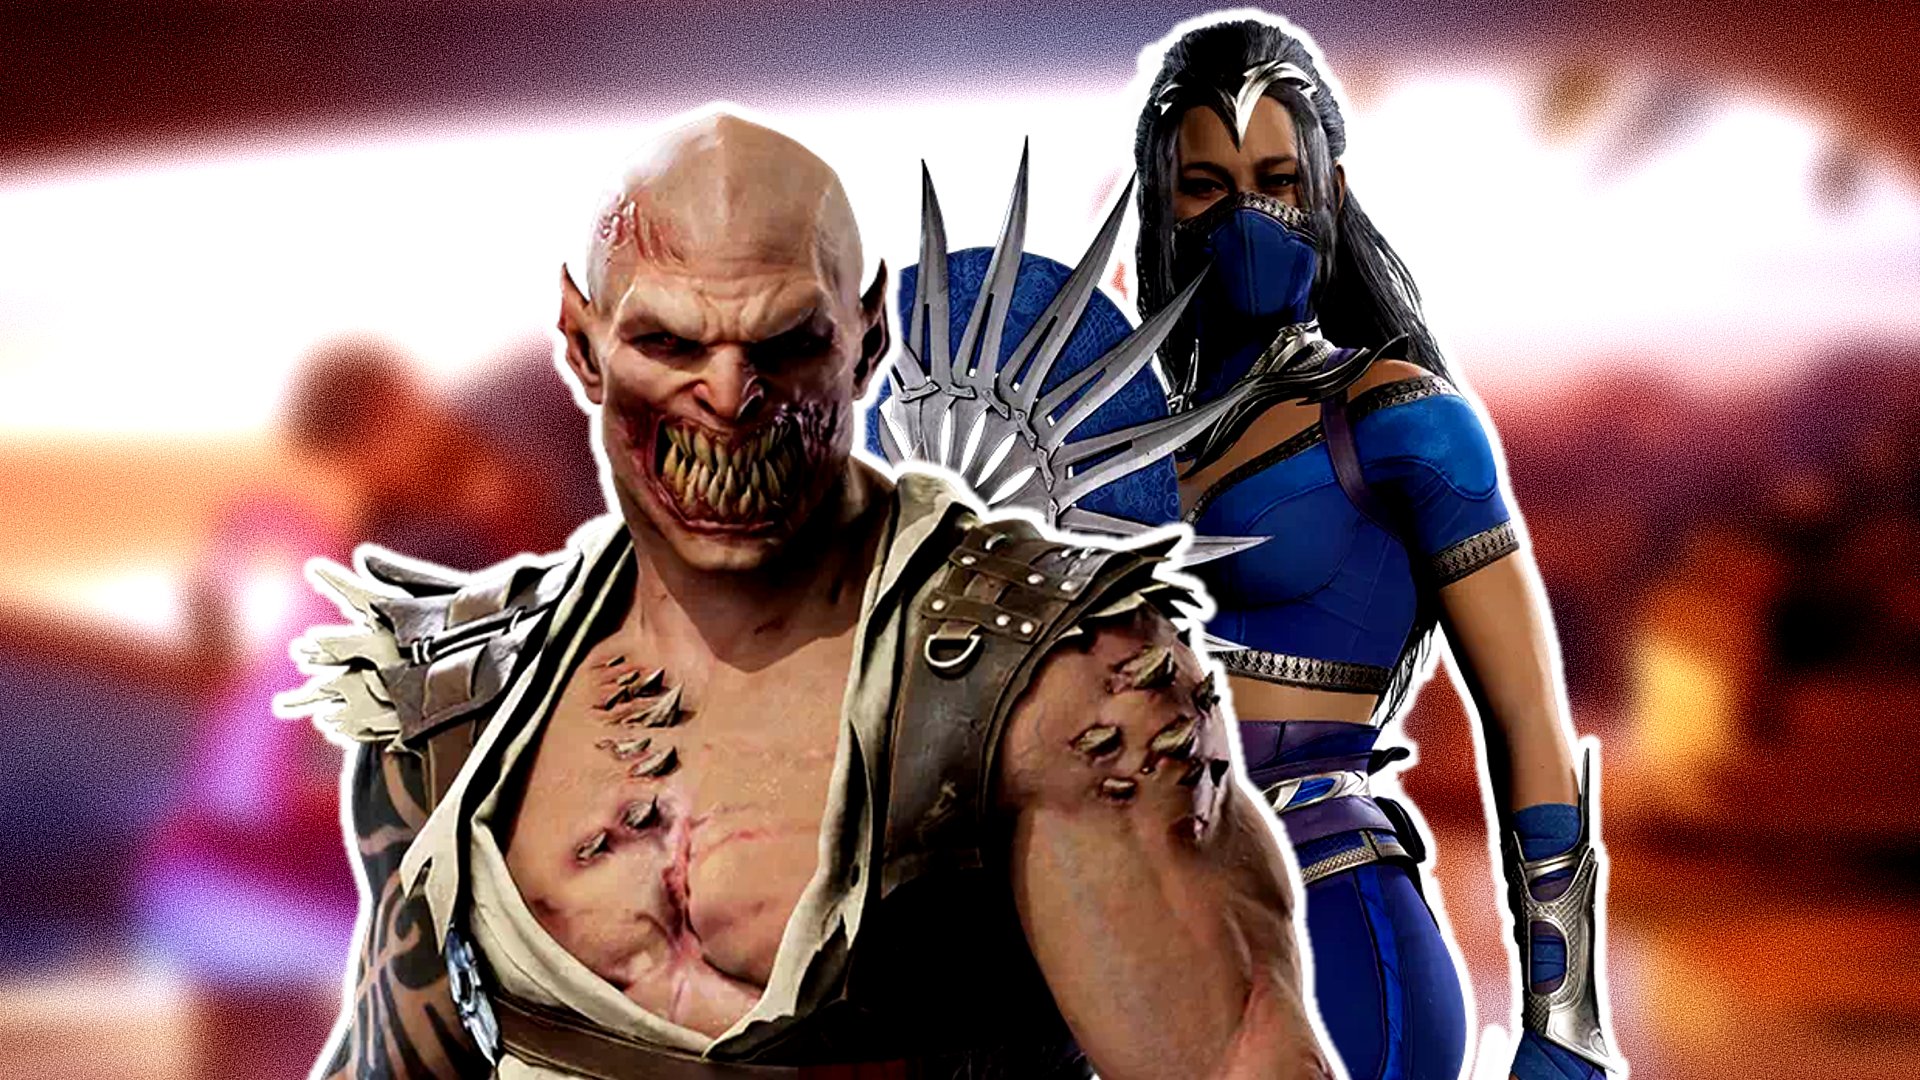 Mortal Kombat 1: detalhes da história, single-player e mais